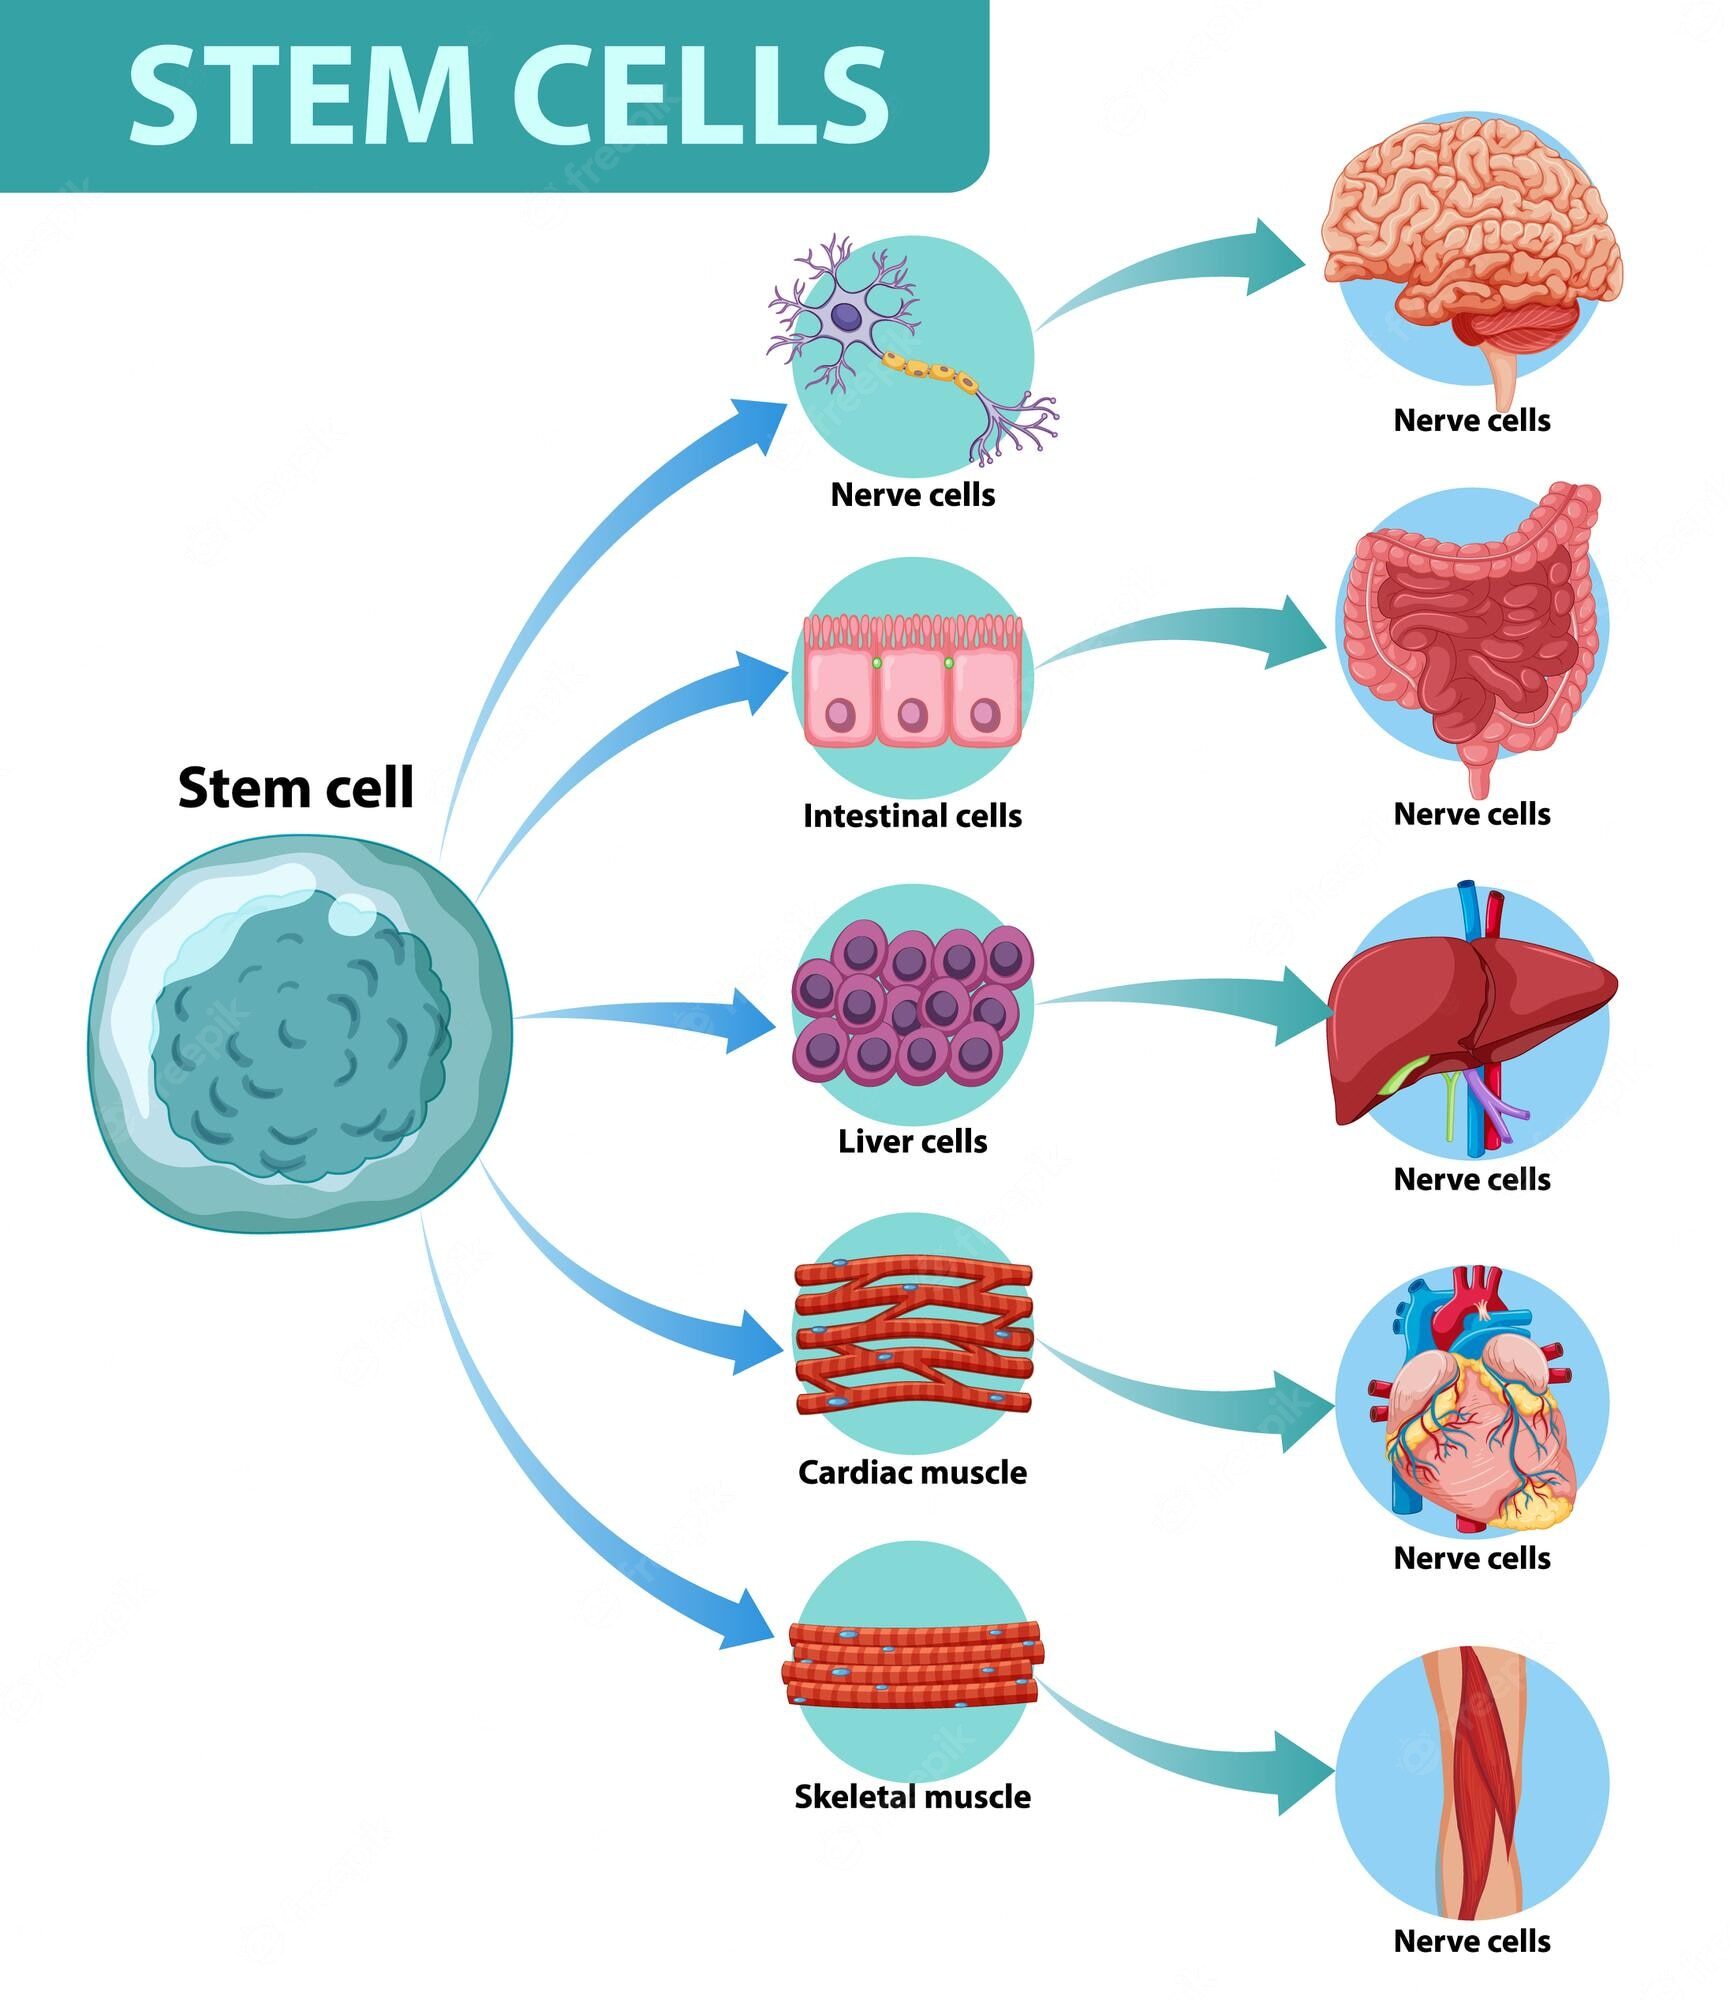 information-poster-human-stem-cells_1308-53805-8420575